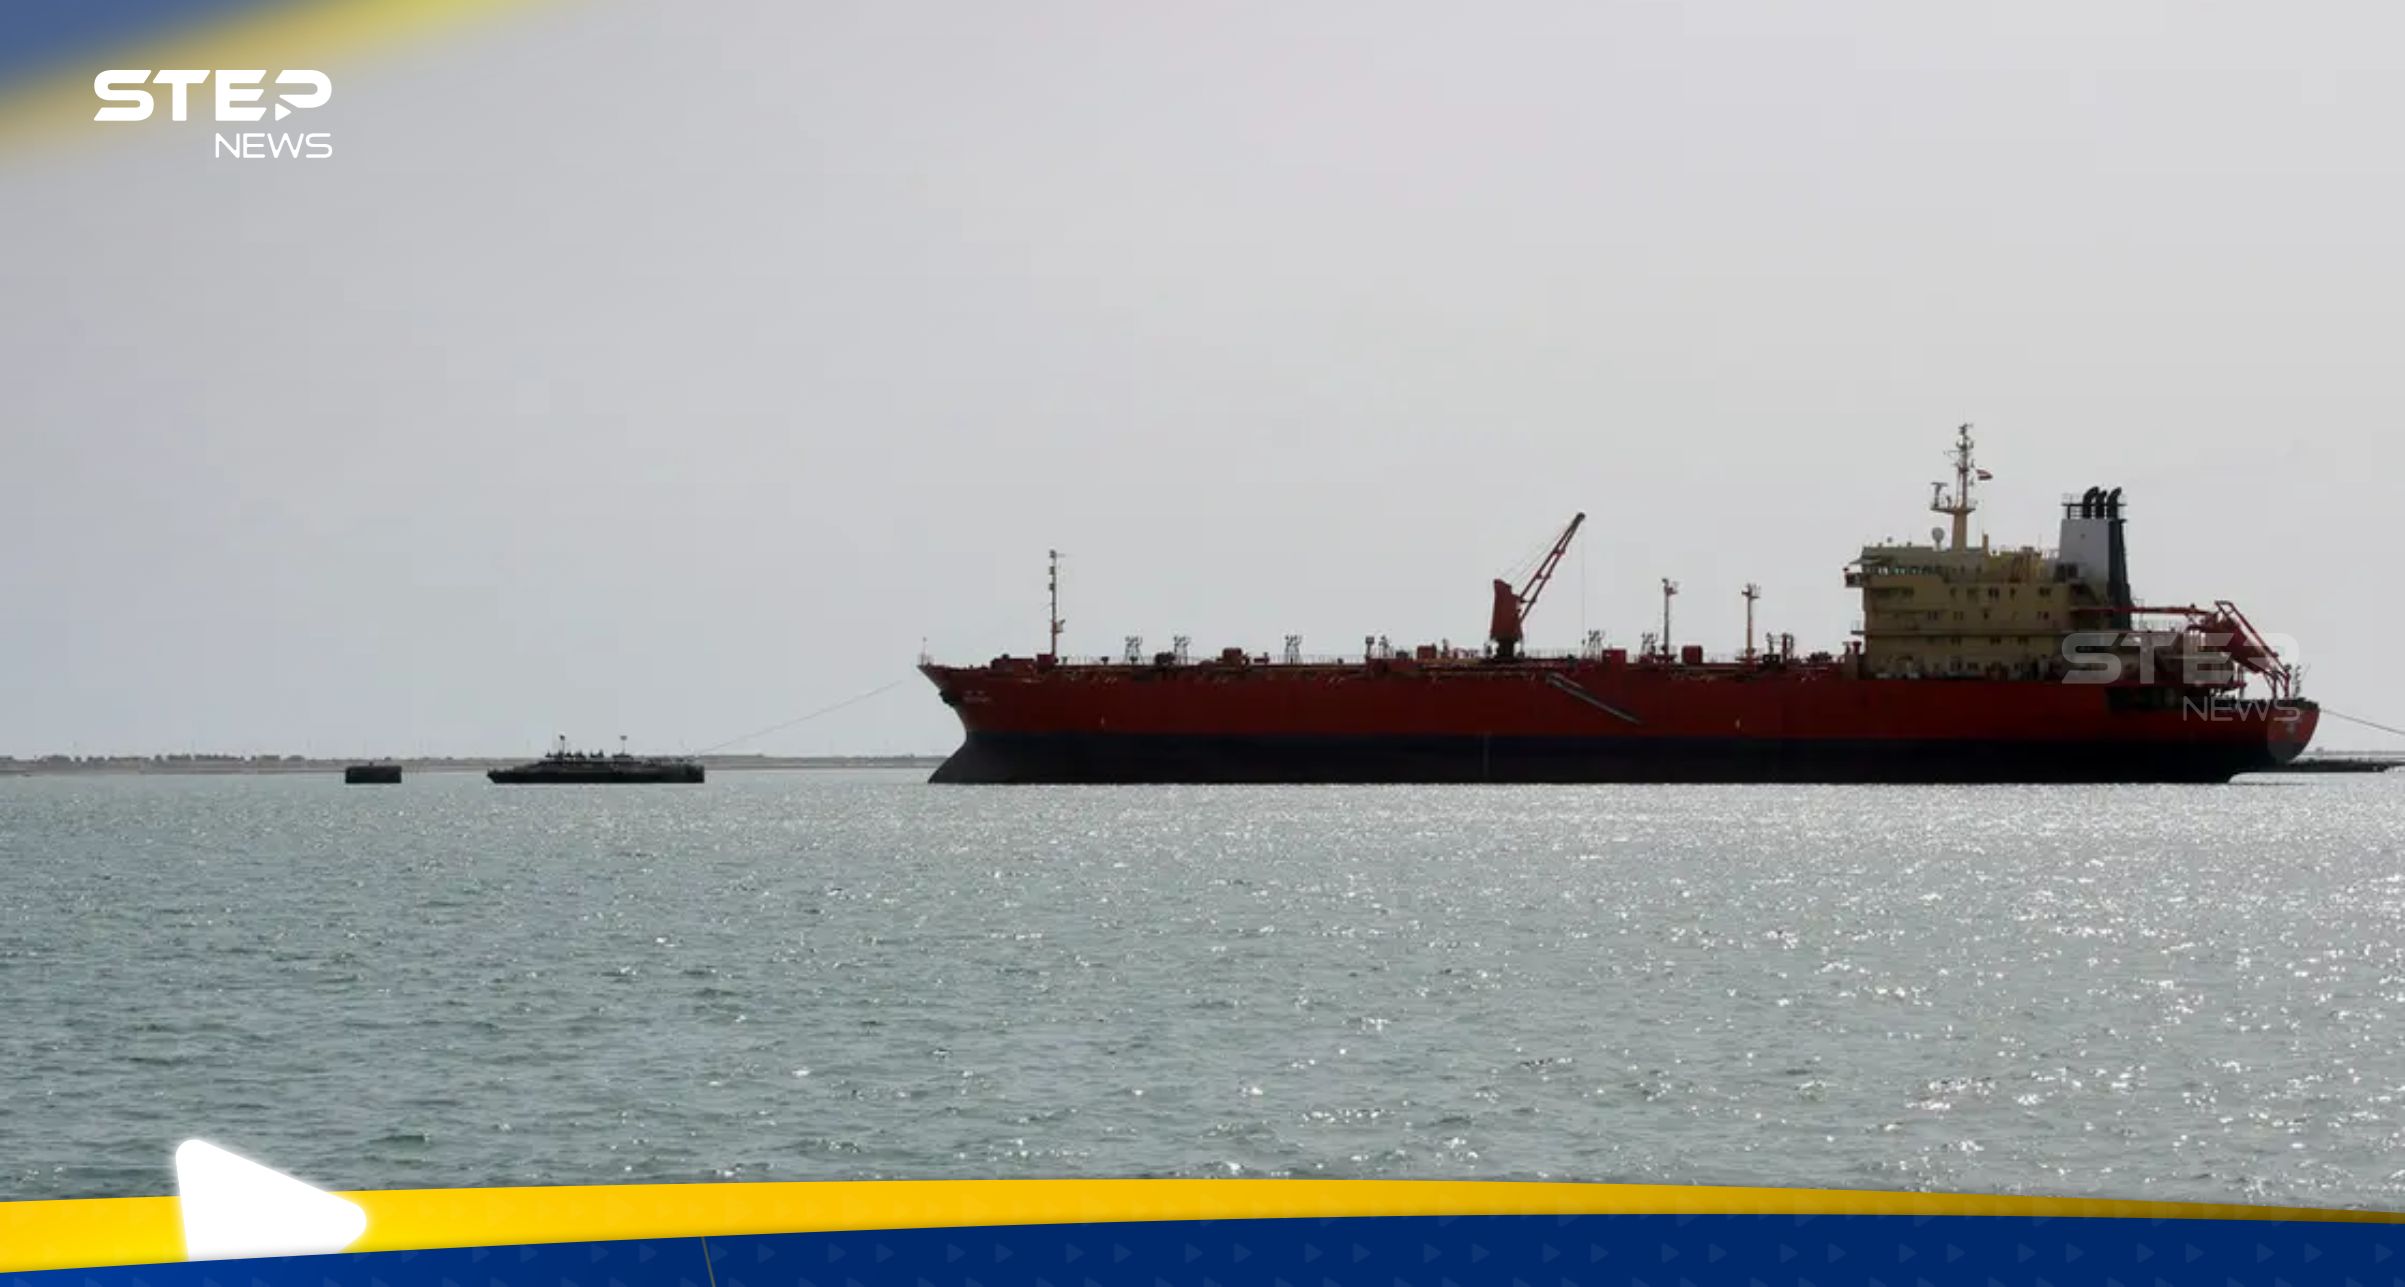 مسيرتان استهدفتا سفينة قرب ميناء الحديدة اليمني وسط سماع انفجارات